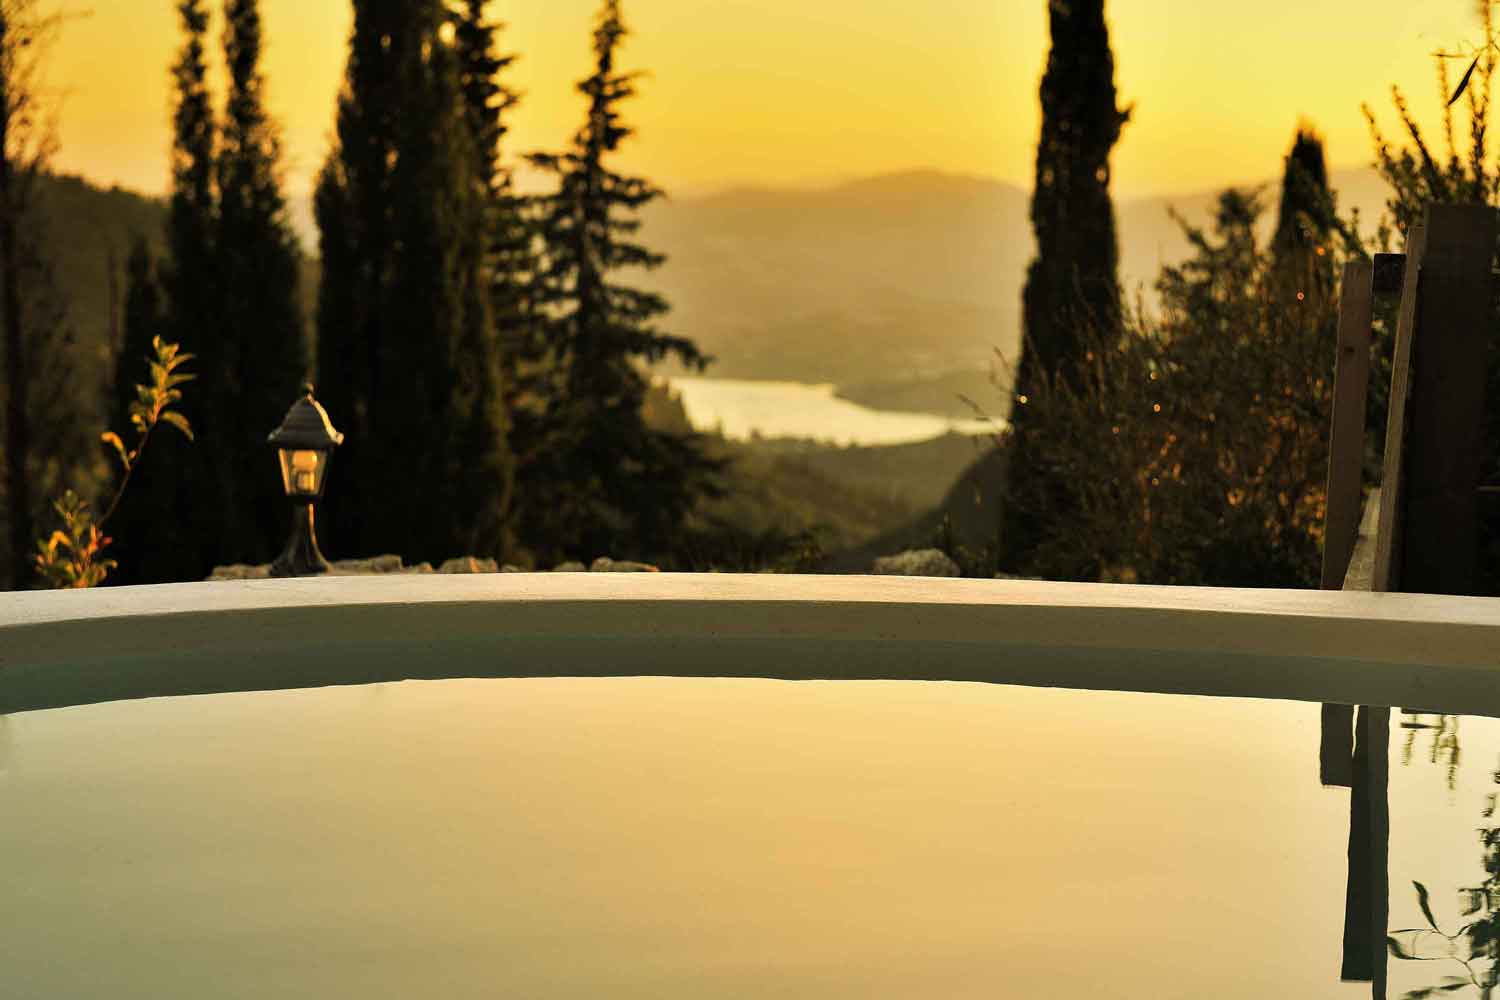 βίλα με ιδιωτική πισίνα στην Ελλάδα,, καταπληκτική θέα στην ανατολή του ηλίου